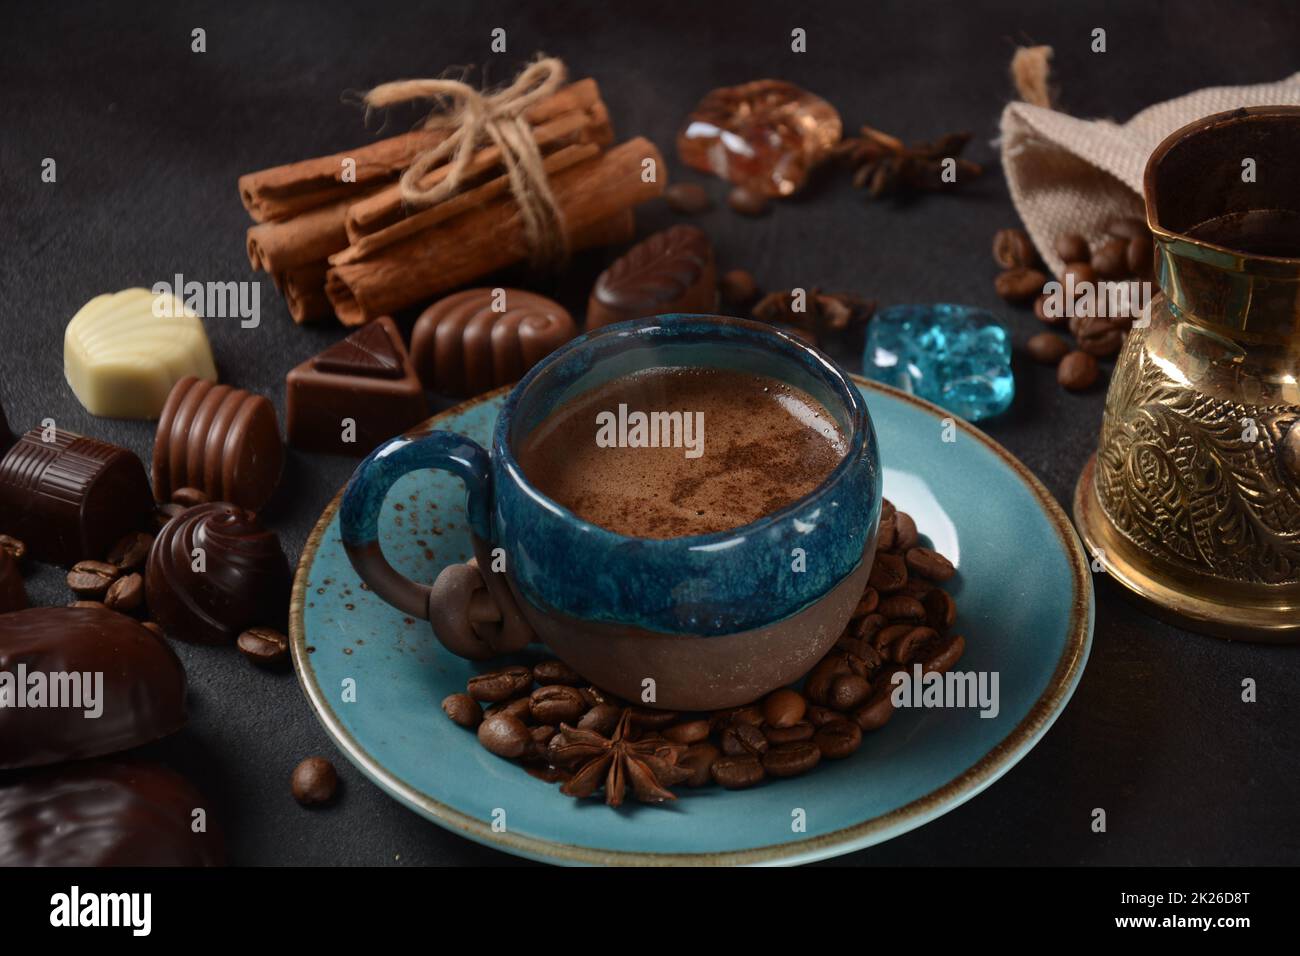 Tazza di caffè, fagioli, cioccolato su vecchio tavolo da cucina assortimento di dolci al cioccolato fondente, bianco e latte, zefiro (zephyr). Spezie, cannella. Foto Stock